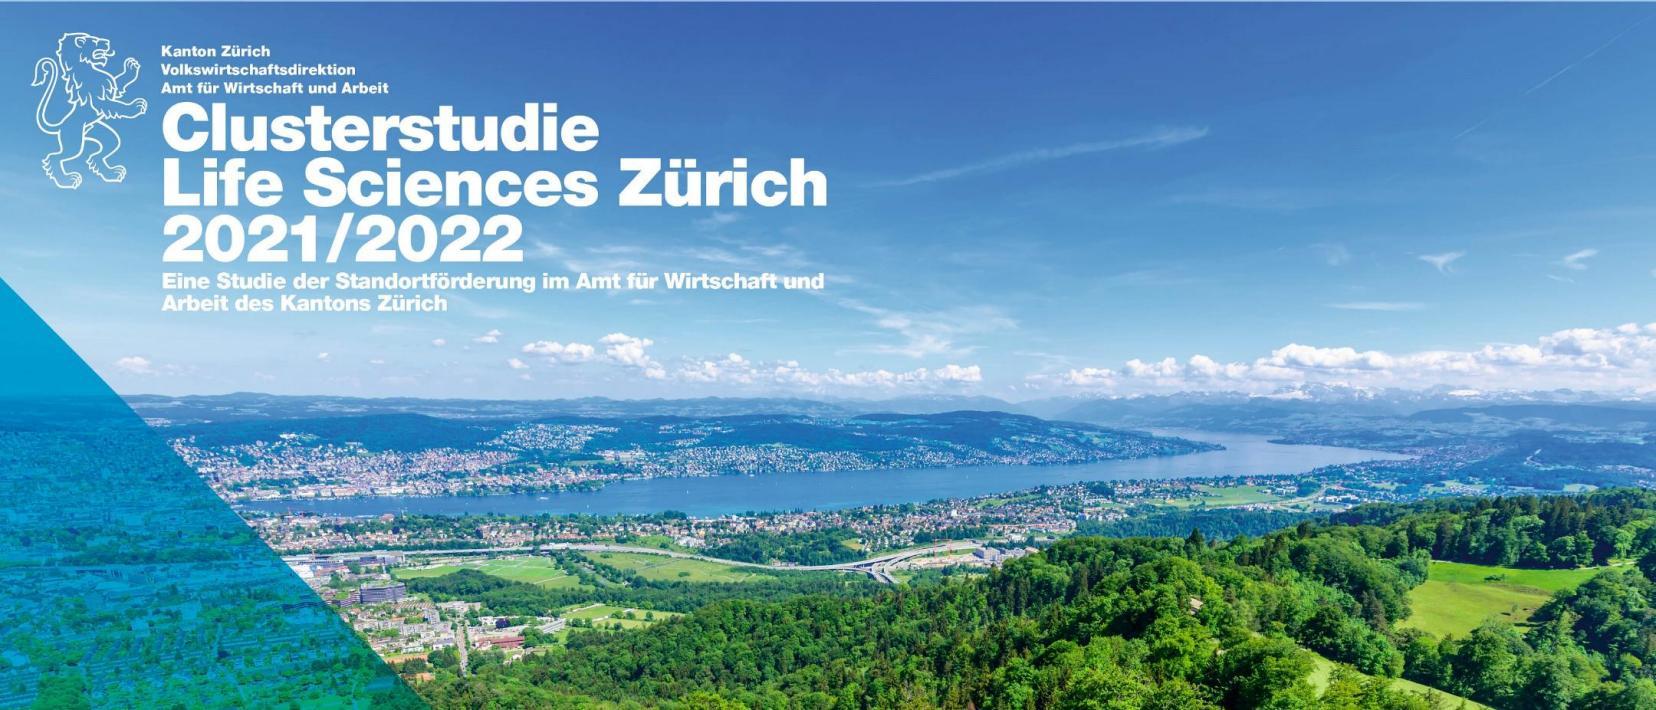 Titelbild der Clusterstudie Life Sciences Zürich 2021/2022